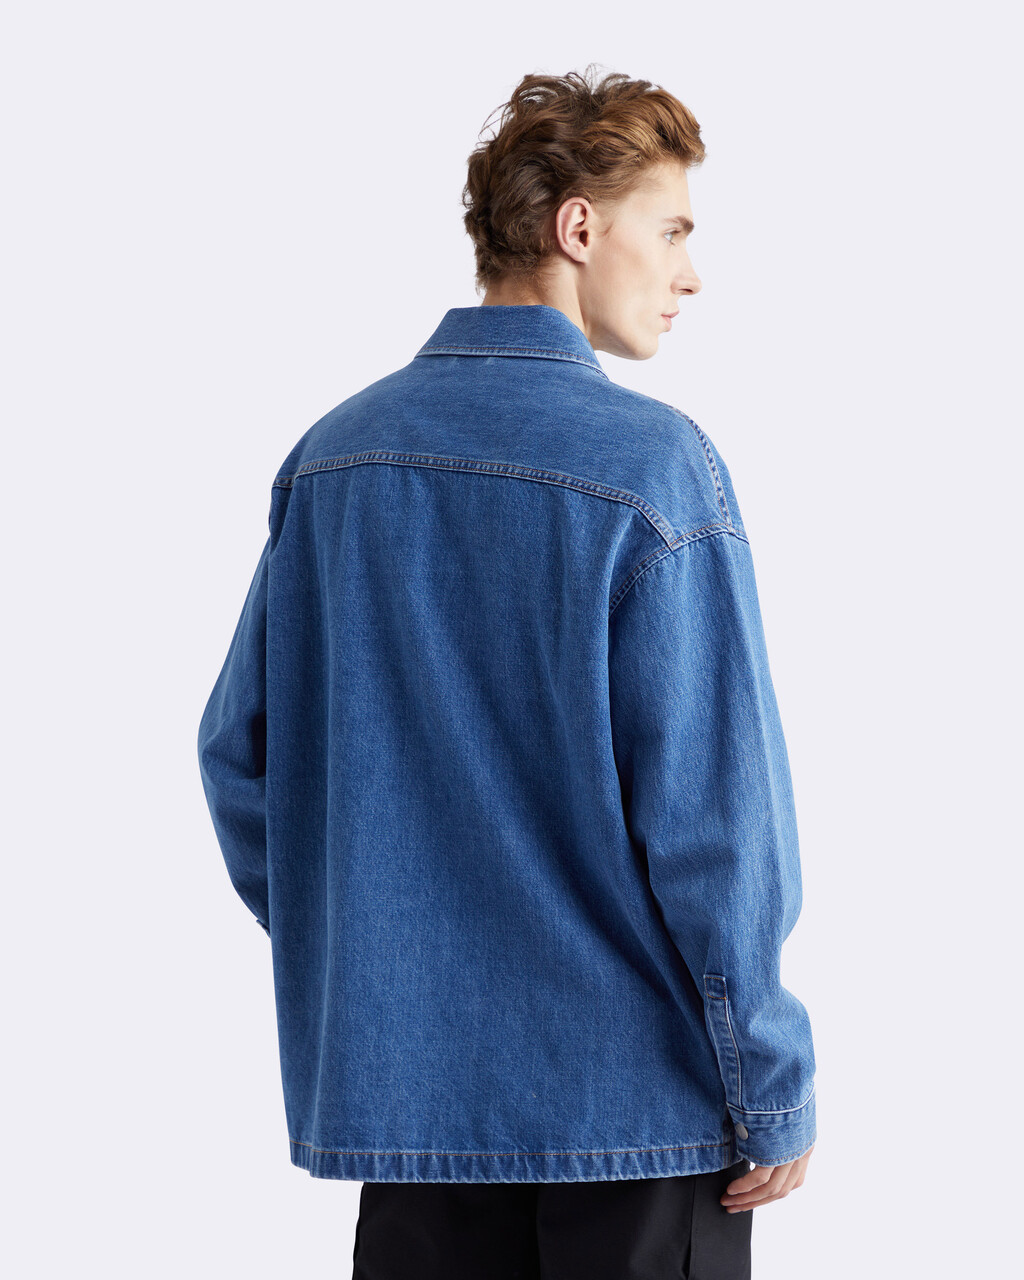 再生棉超寬鬆牛仔襯衫式外套, 051B STONE BLUE, hi-res